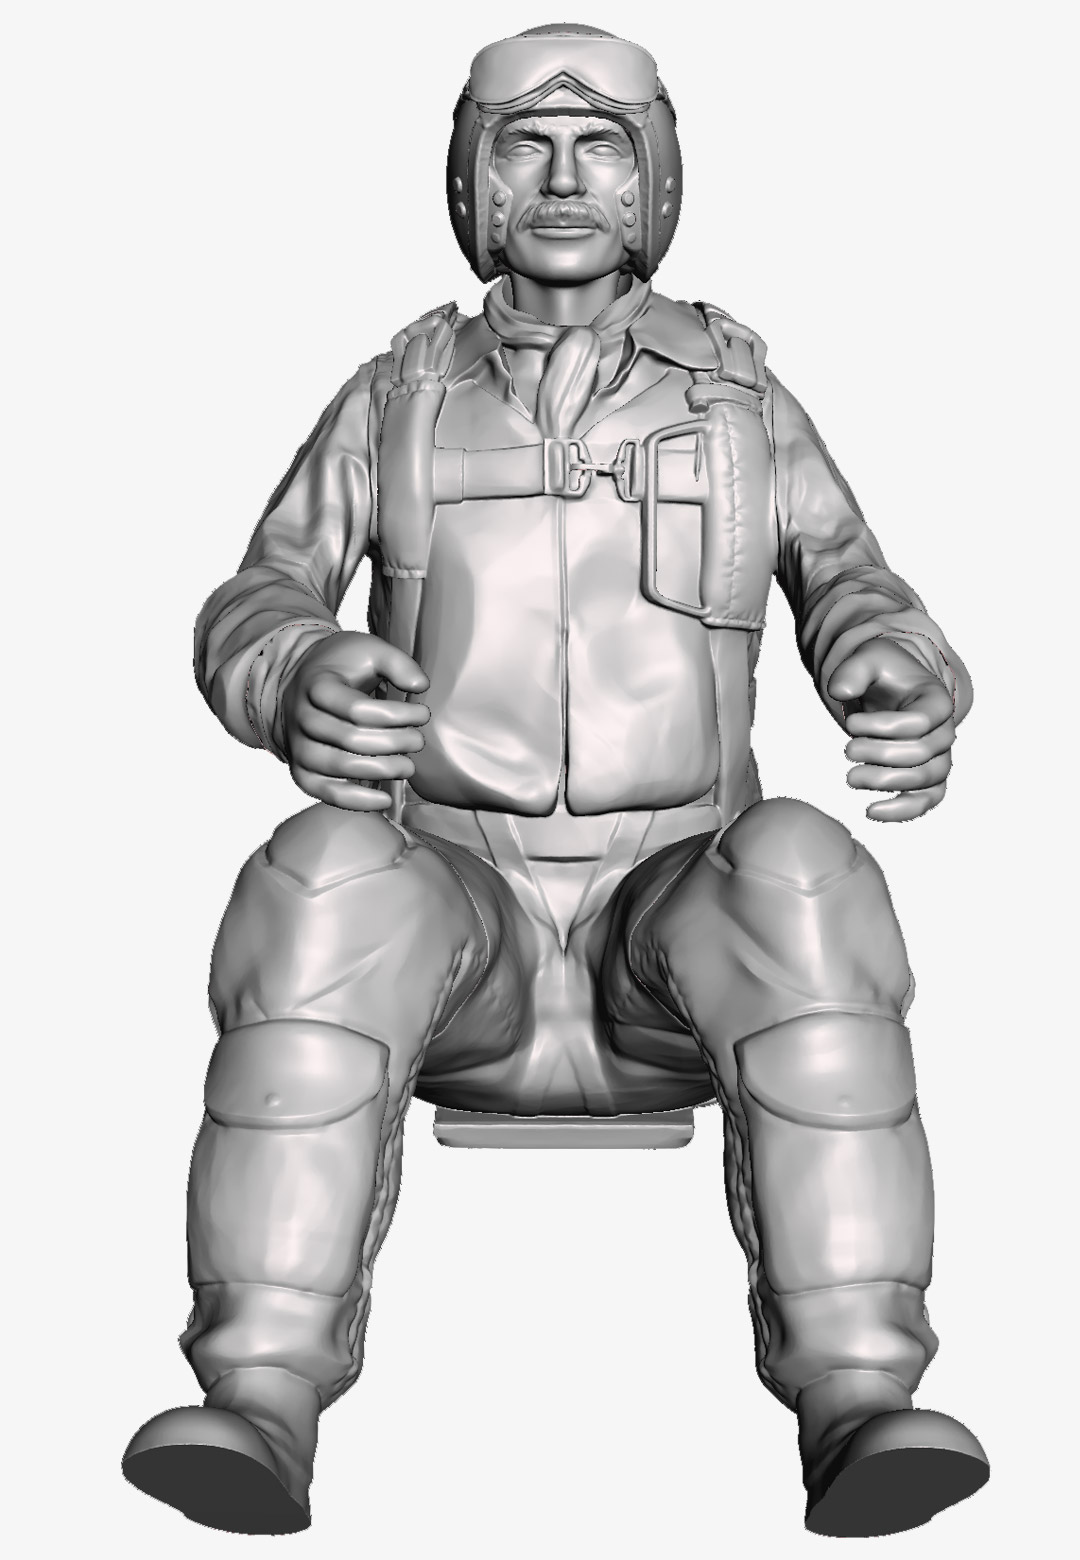 bastlero - Glenn Garrison 3D printable figure